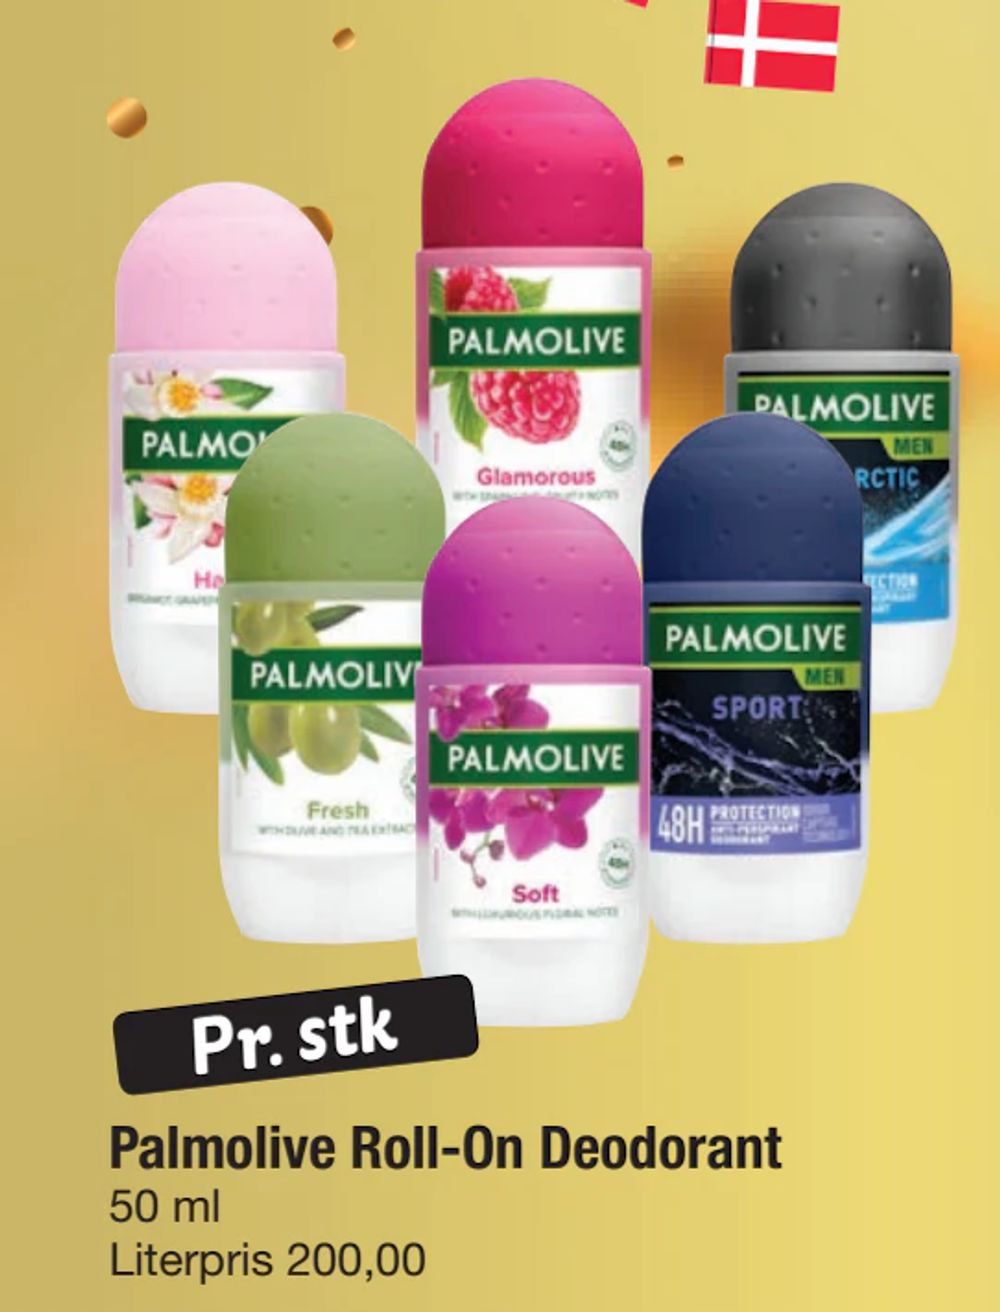 Tilbud på Palmolive Roll-On Deodorant fra fakta Tyskland til 10 kr.